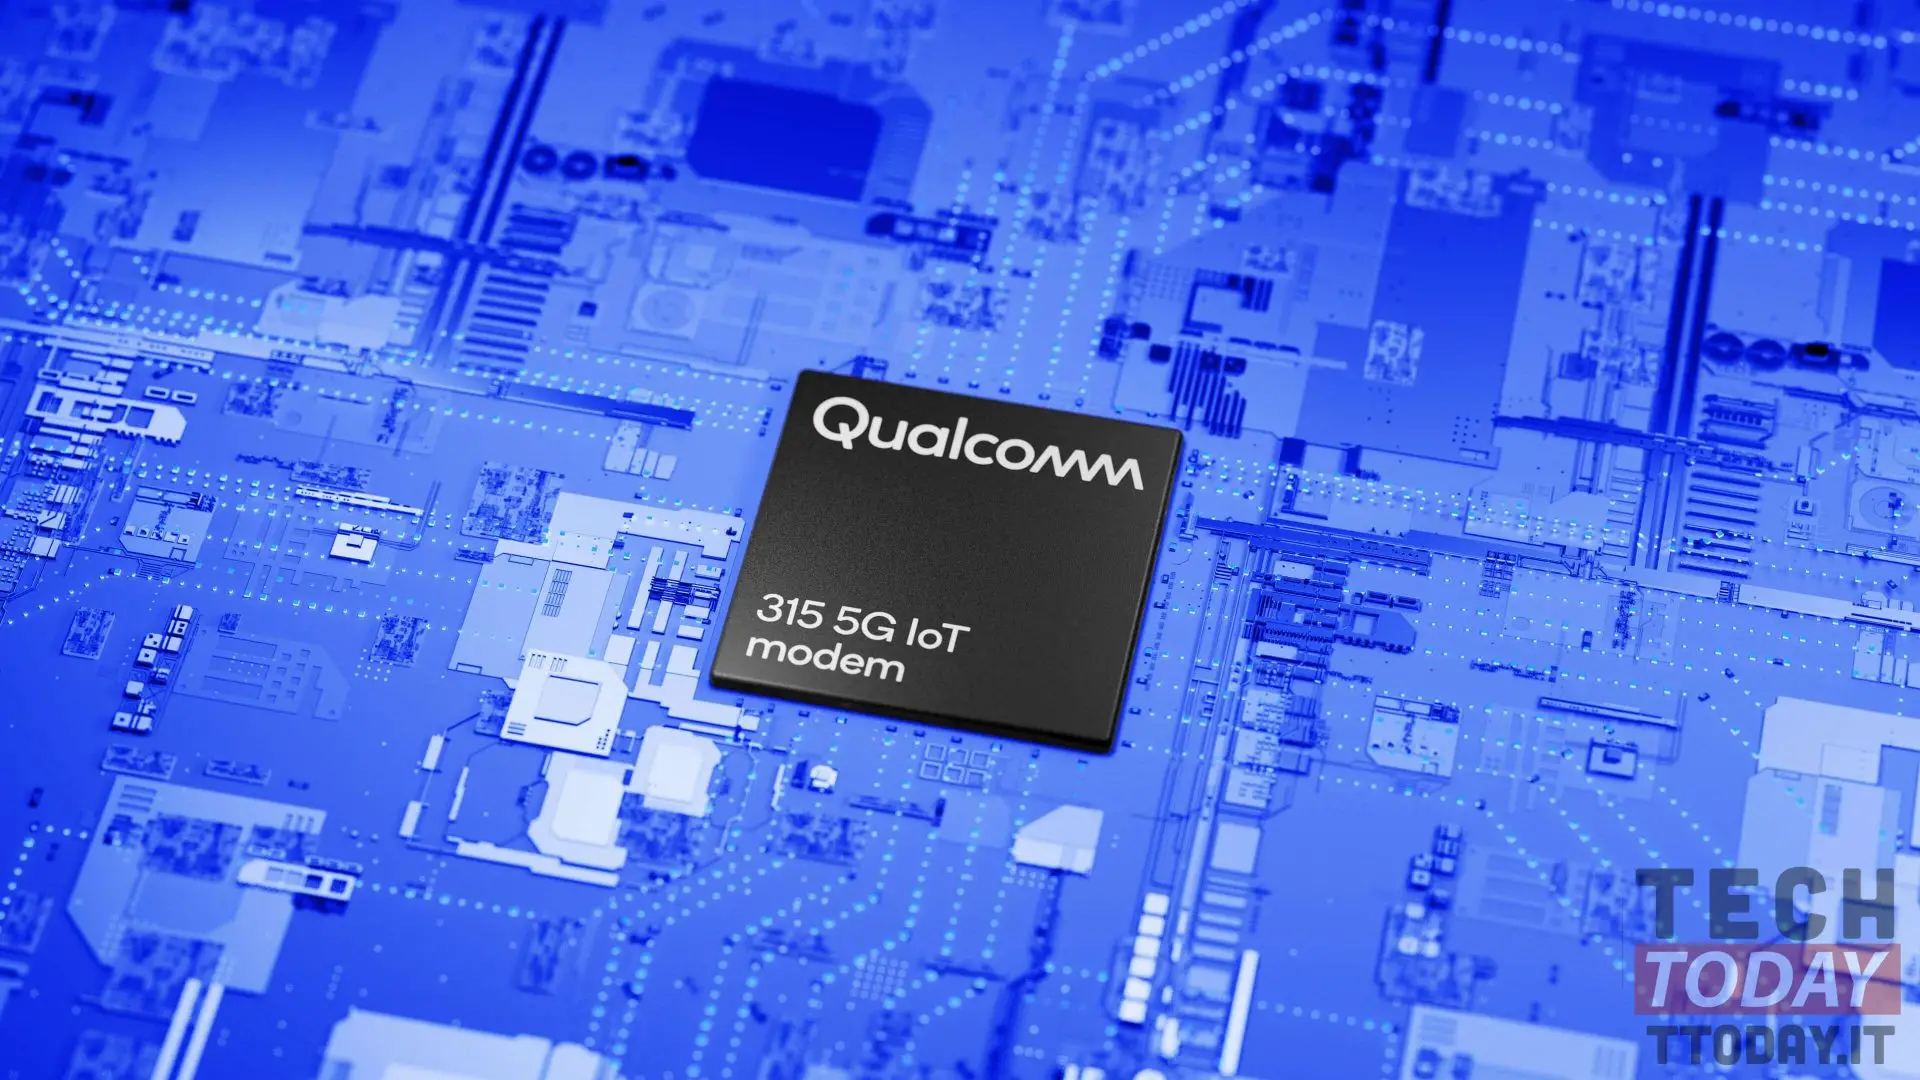 Το Qualcomm 315 είναι το μόντεμ 5G βελτιστοποιημένο για συσκευές IoT